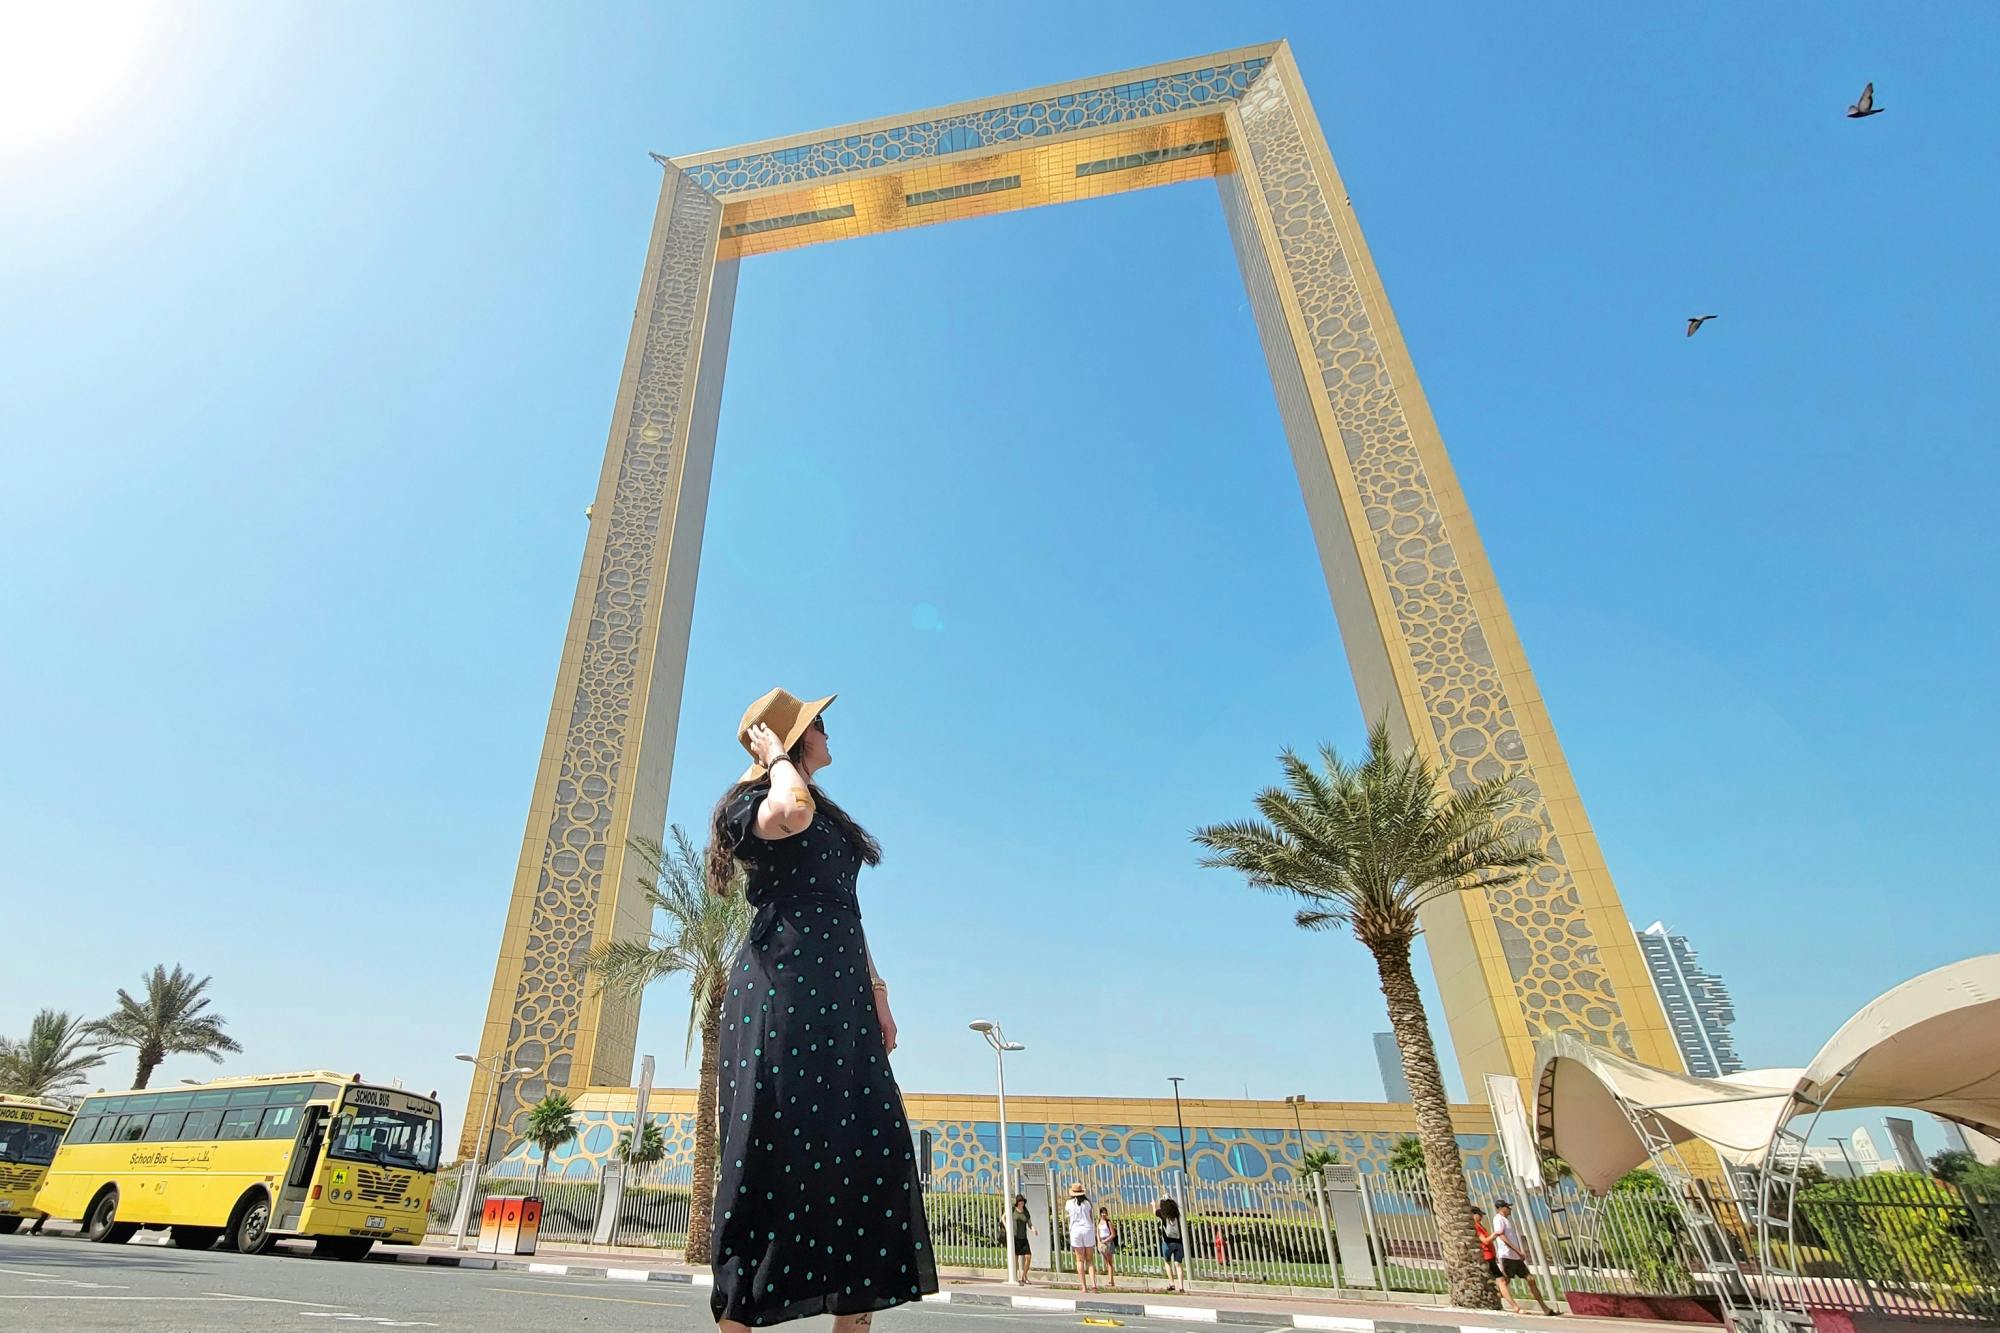 Bilhetes Dubai Frame com excursão de meio dia a Dubai saindo de Sharjah